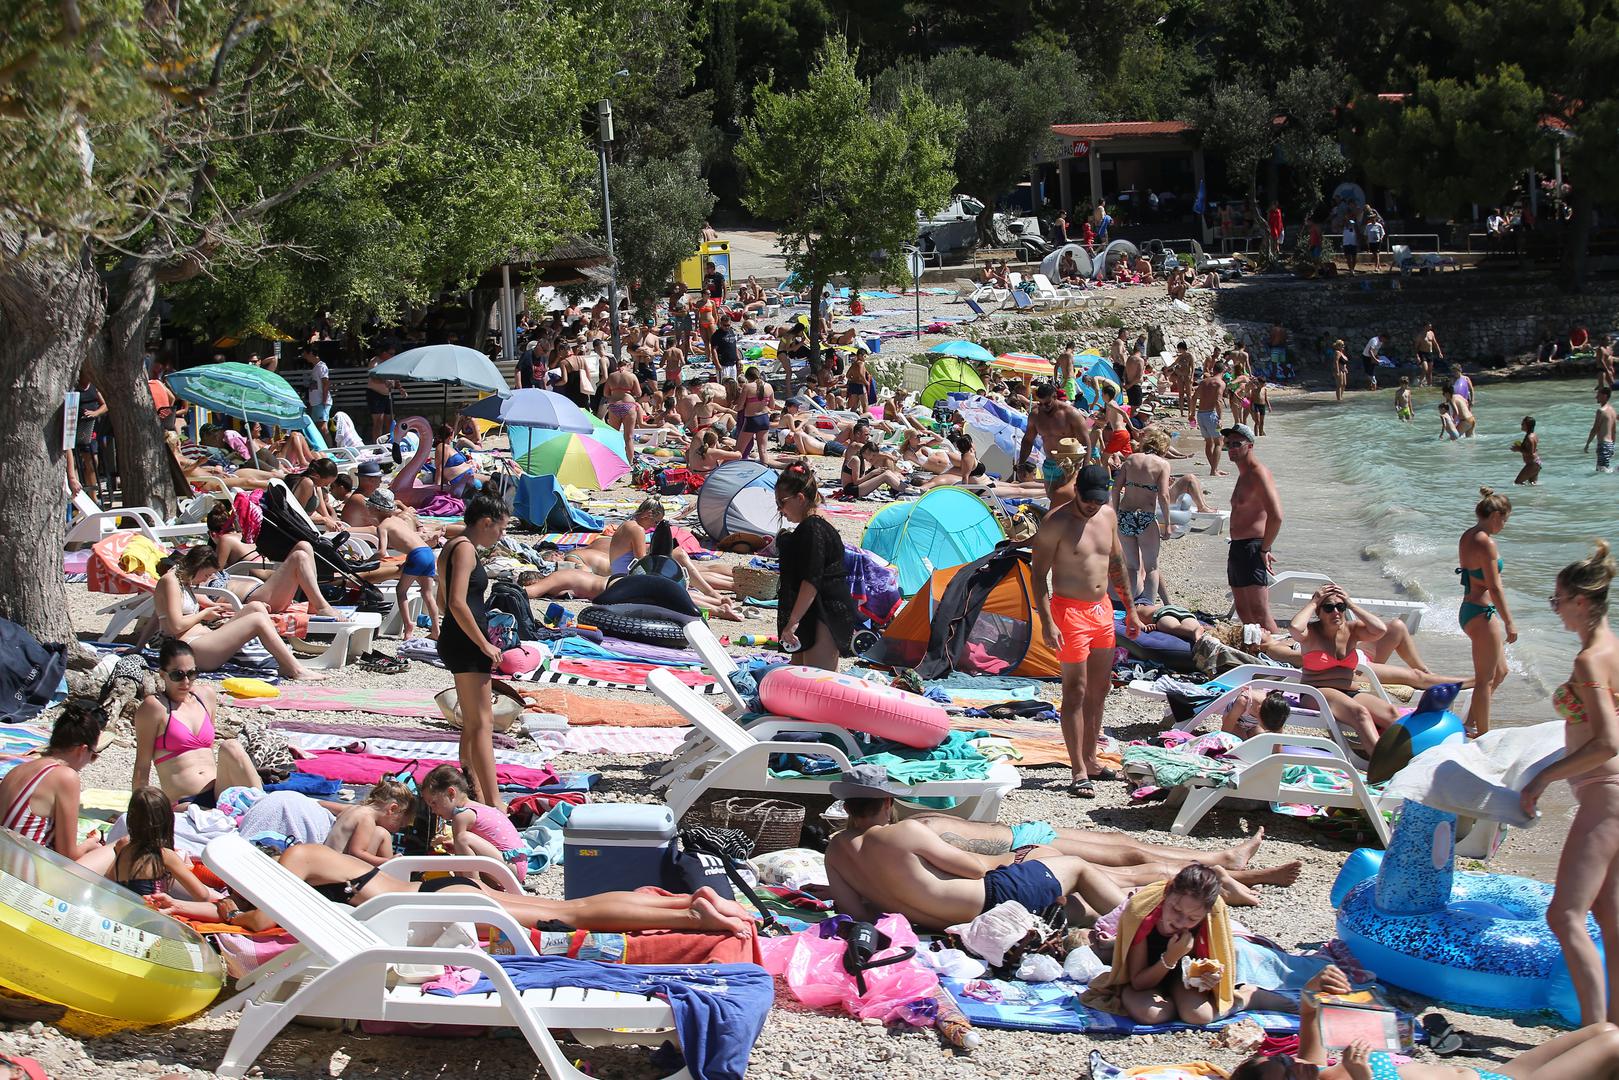 Na poznatoj murterskoj plazi Slanici kupača ima više nego na ostalim popularnim plažama u Hrvatskoj tijekom pandemije koronavirusa. 